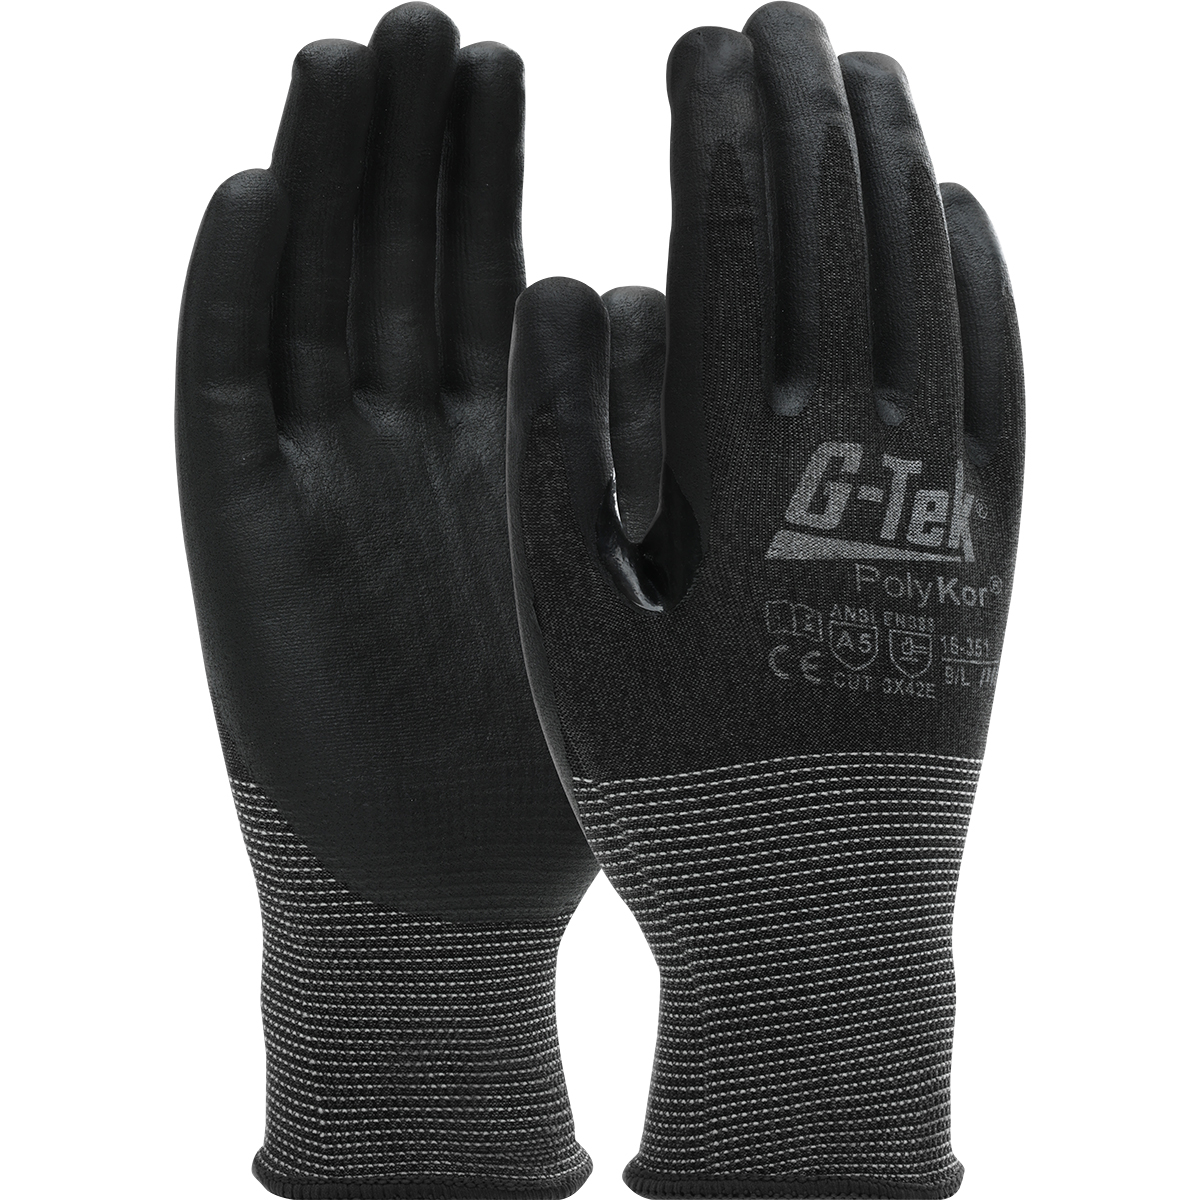 PIP® G-Tek® PolyKor® 21-Gauge Nitrile Coated A5 Cut Gloves 87-16-351